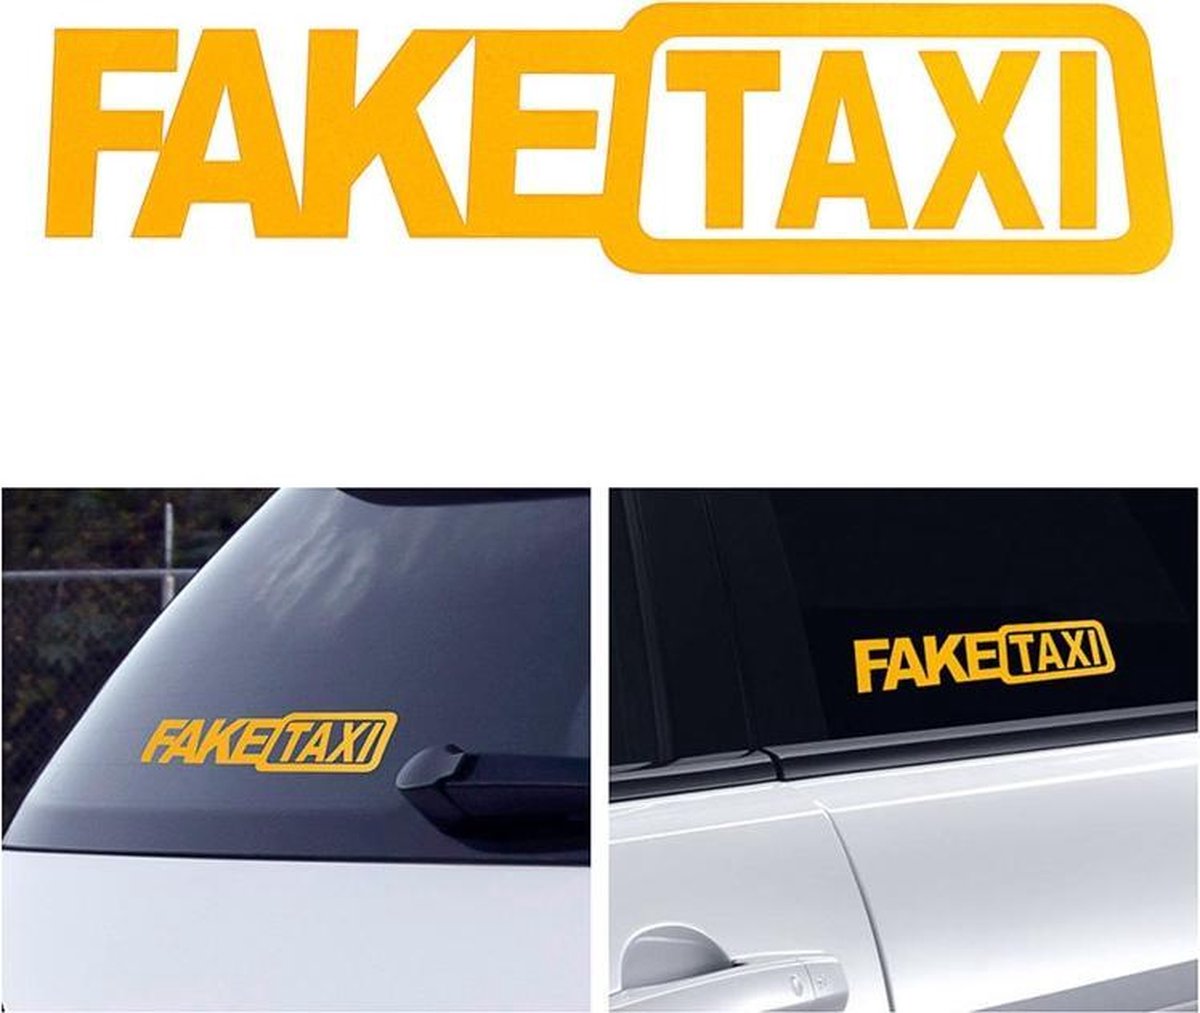 Fake Taksi